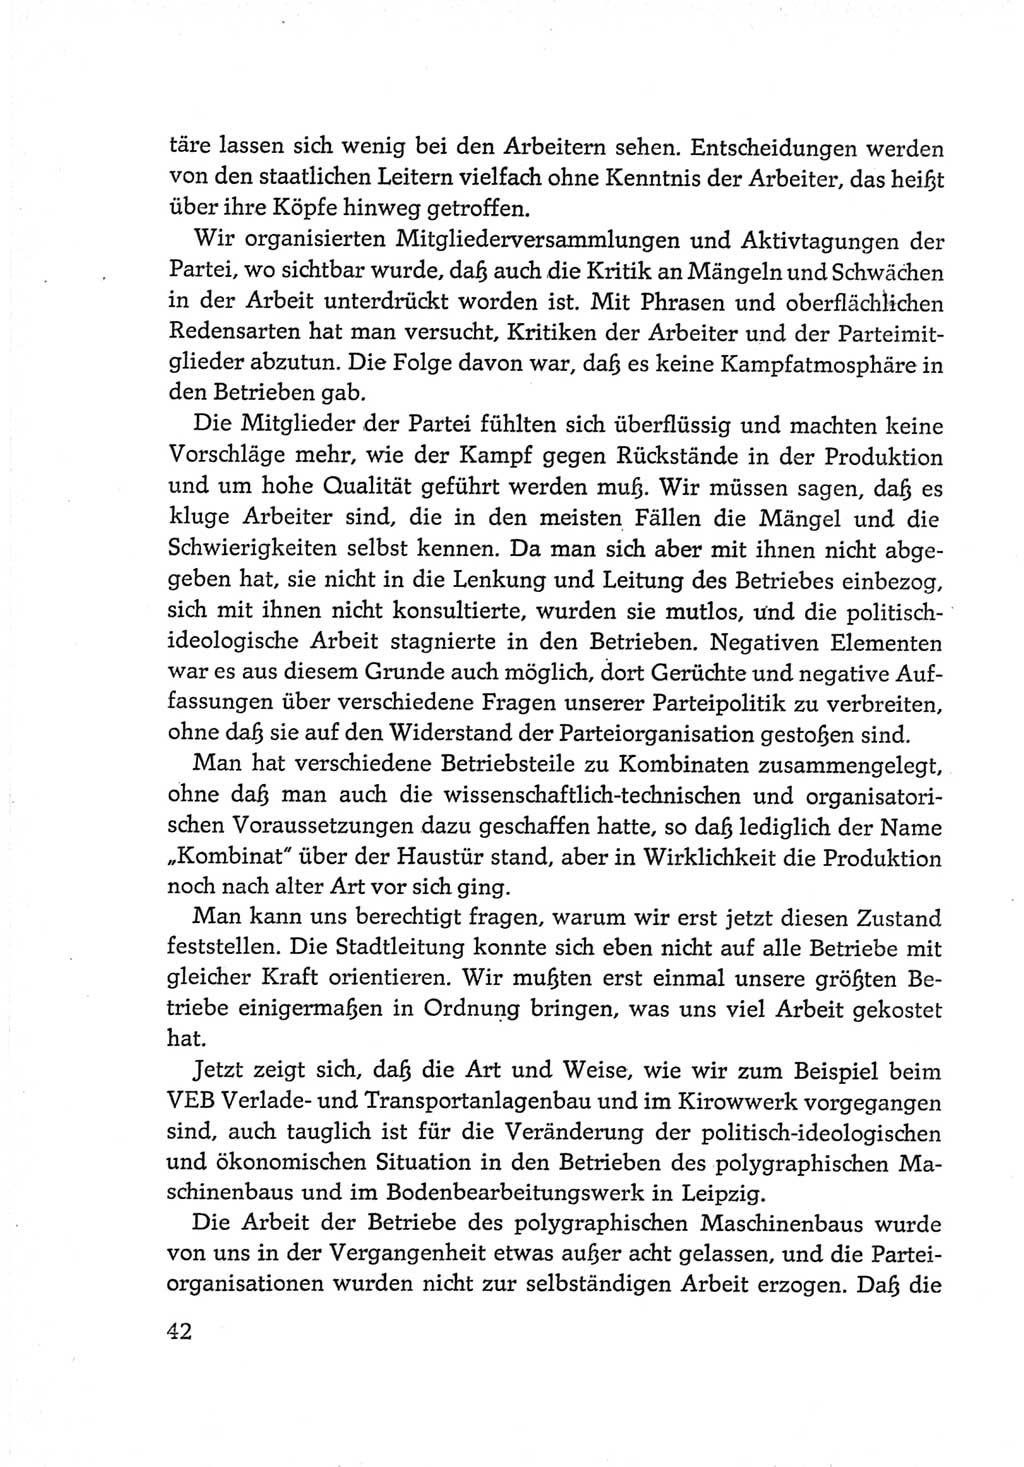 Protokoll der Verhandlungen des Ⅵ. Parteitages der Sozialistischen Einheitspartei Deutschlands (SED) [Deutsche Demokratische Republik (DDR)] 1963, Band Ⅲ, Seite 42 (Prot. Verh. Ⅵ. PT SED DDR 1963, Bd. Ⅲ, S. 42)